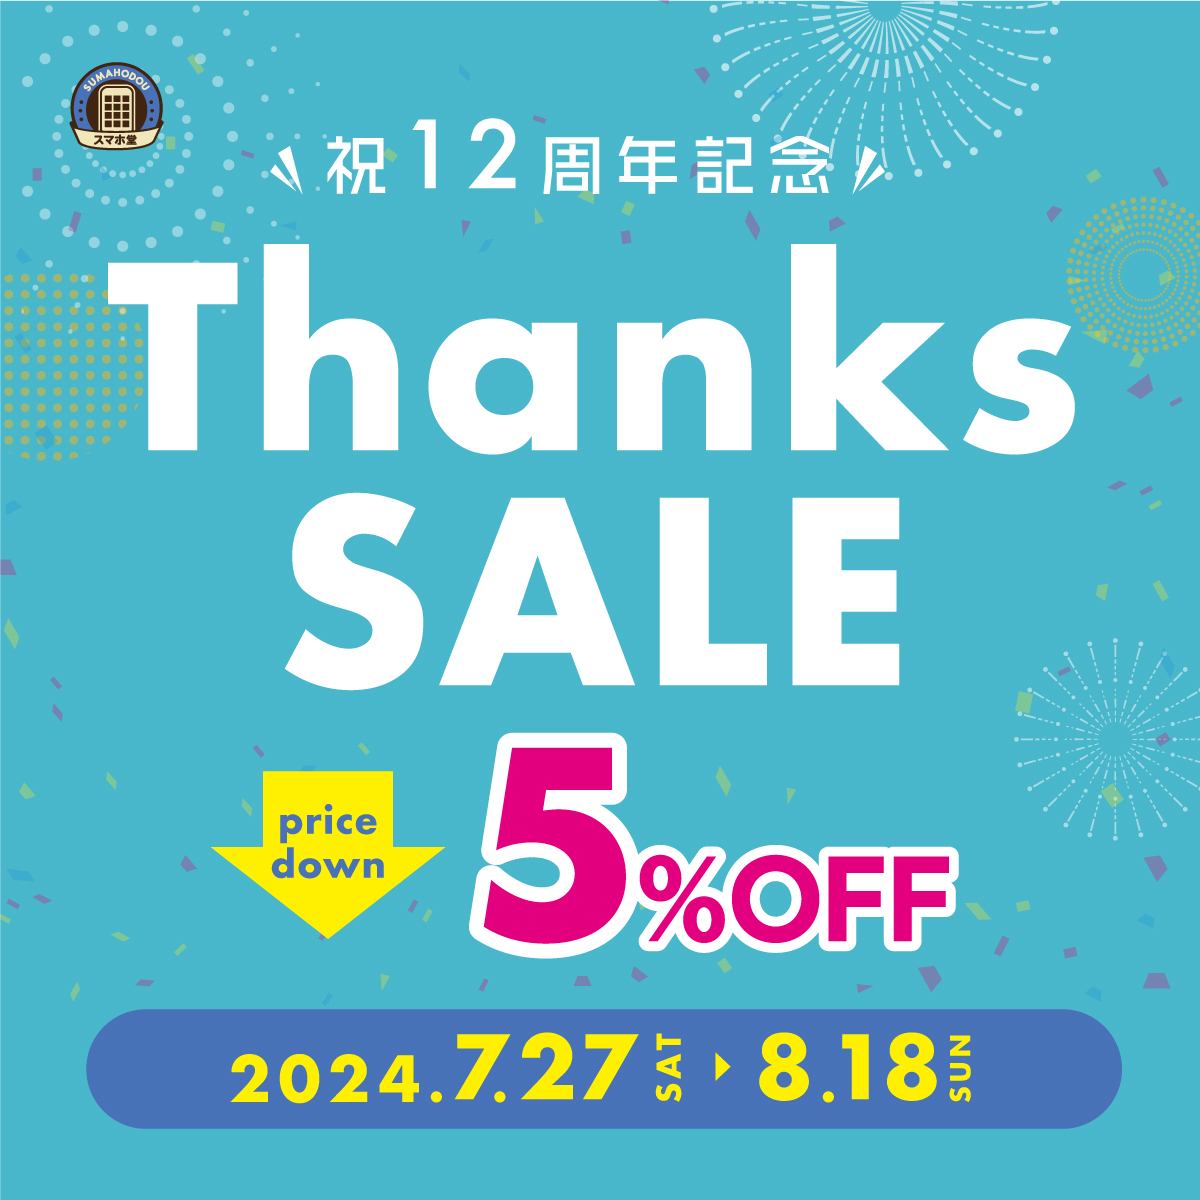 スマホ堂12周年記念イベント「Thanks SALE 5%OFF」のサムネイル画像